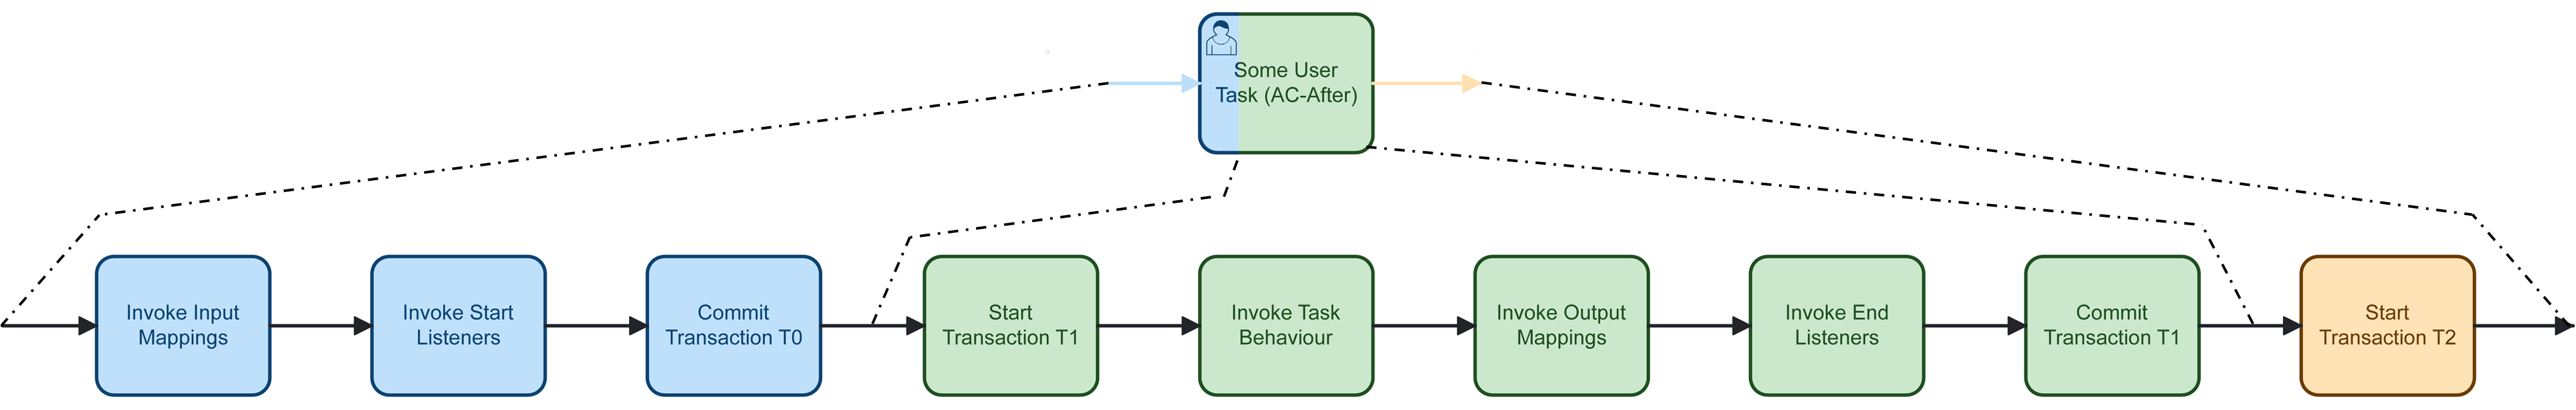 Transaction Boundaries for User Tasks